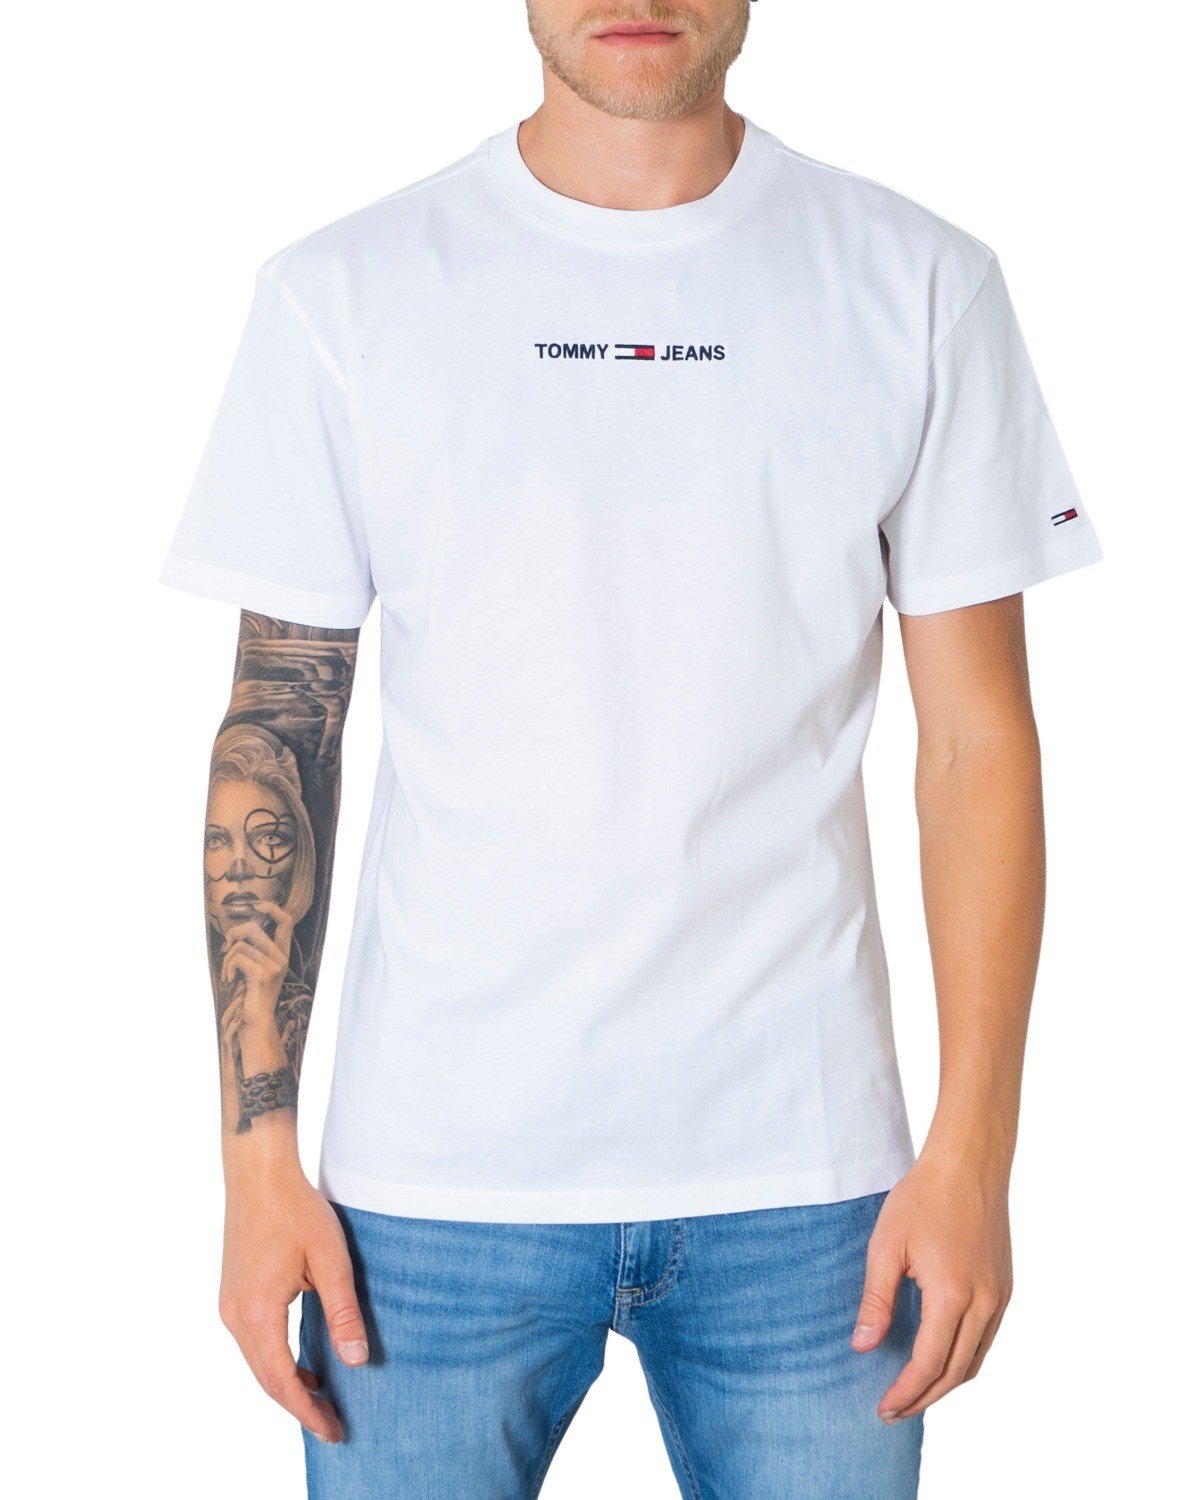 Tommy Hilfiger Jeans Men's T-Shirt Various Colours 299523 - white S